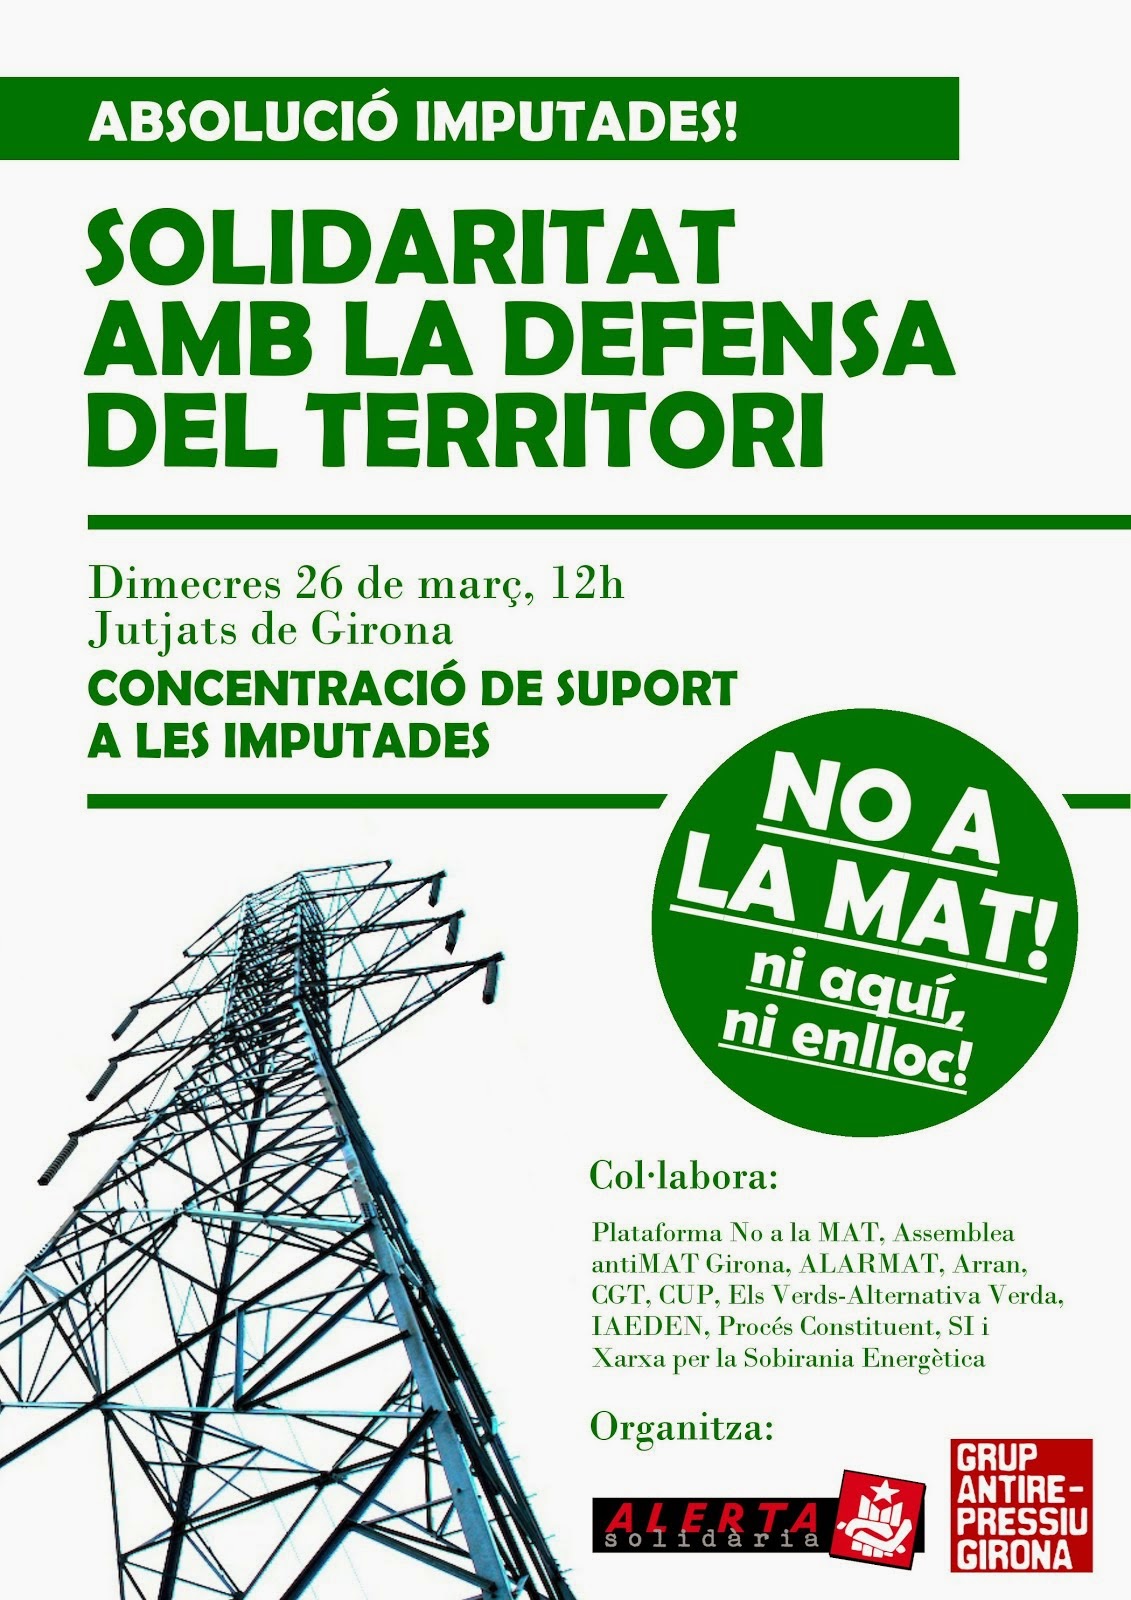 solidaritat_en_defensa_del_territori_nomat.jpg